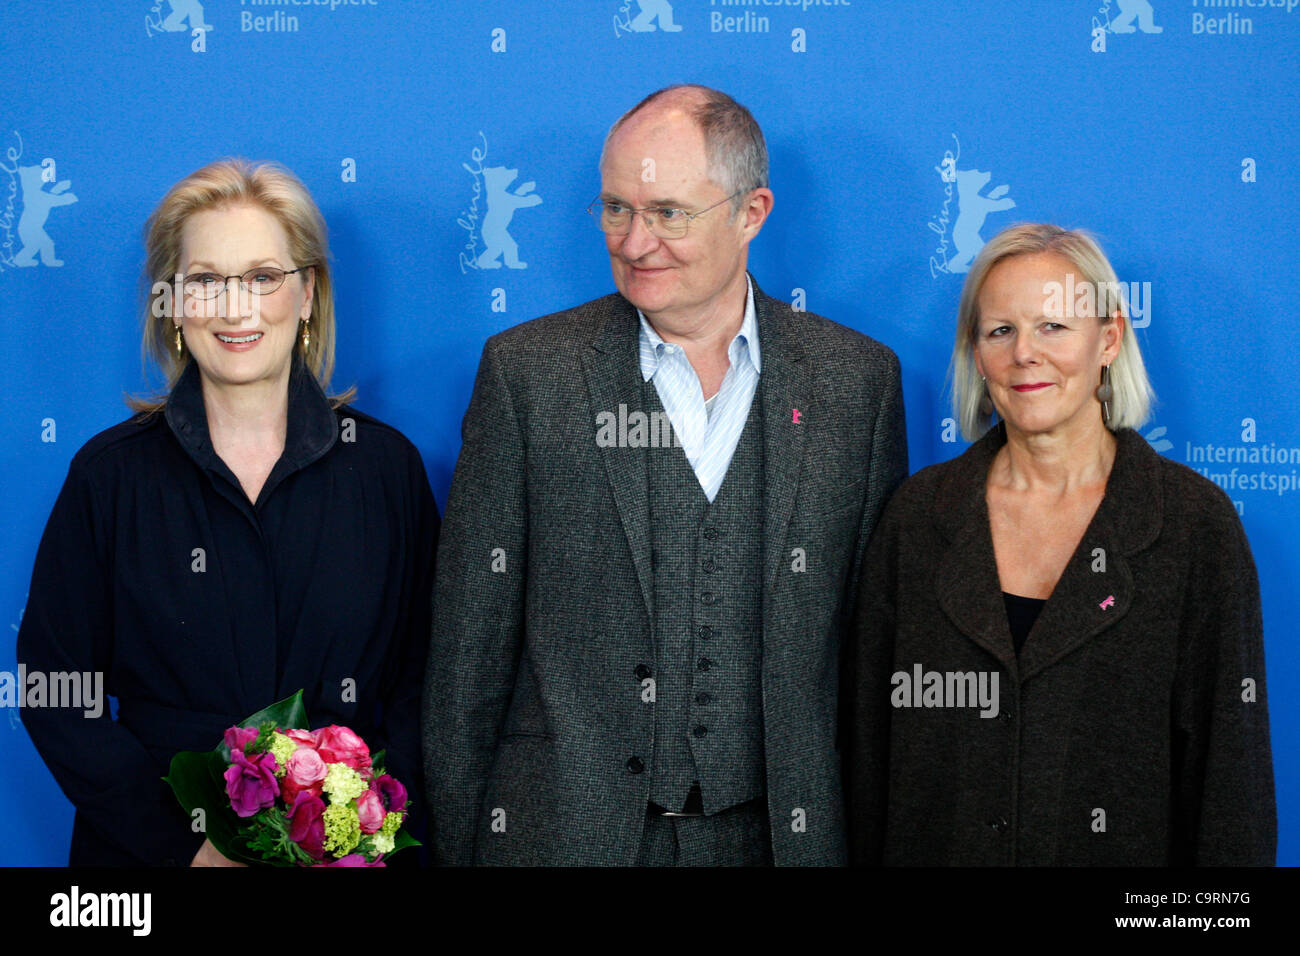 14 febbraio 2012 Berlino Germania. L'attrice Meryl Streep, attore JIM BROADBENT e direttore Phyllida Lloyd rappresentano per i fotografi al photocall per il film "La signora di ferro' durante il 62° Festival Internazionale del Cinema di Berlino Berlinale. Foto Stock